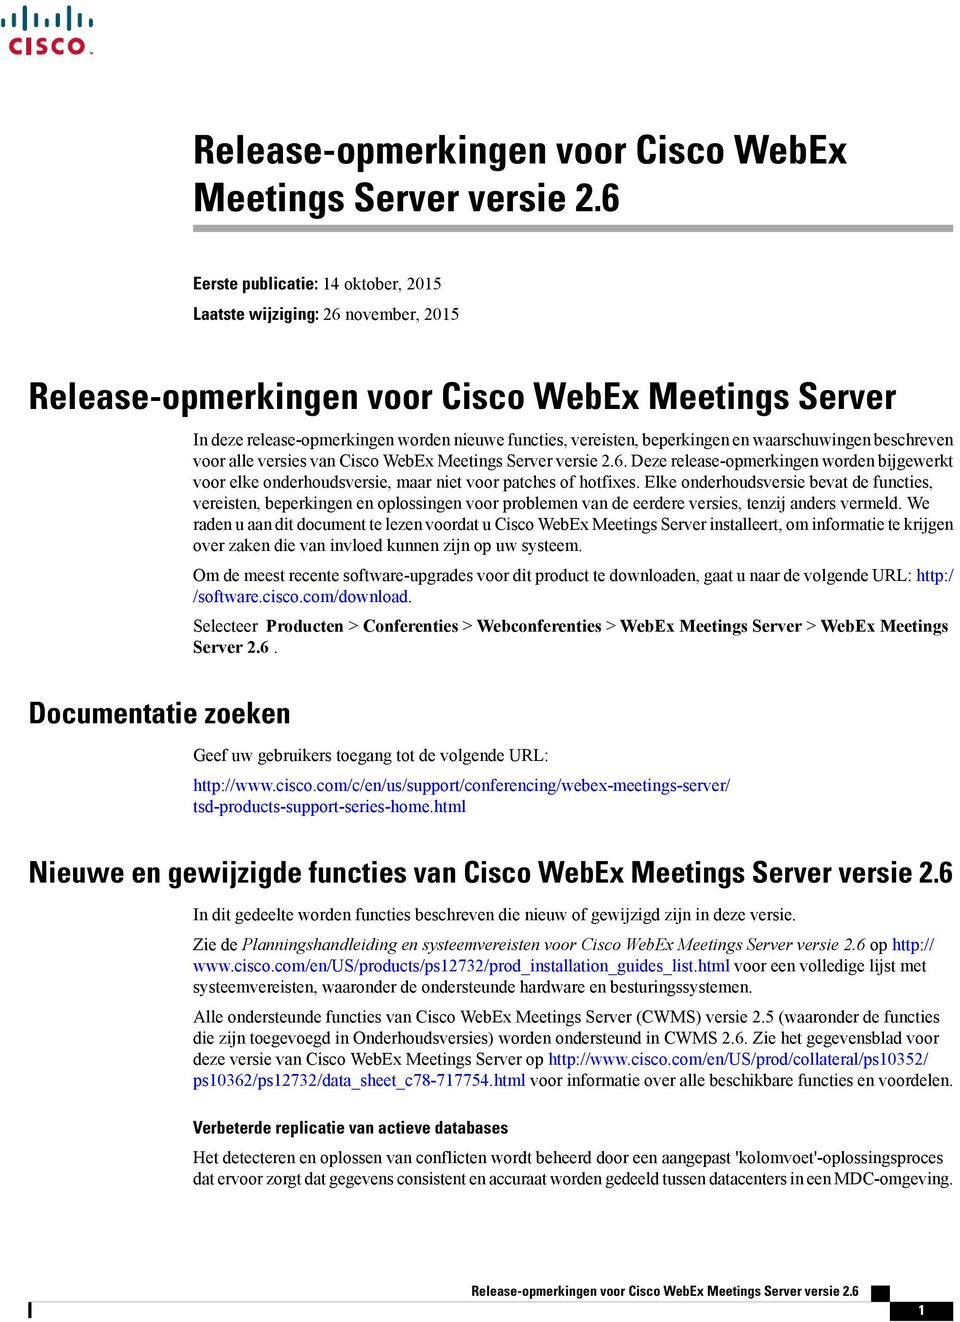 voor alle versies van Cisco WebEx Meetings Server versie.6. Deze release-opmerkingen worden bijgewerkt voor elke onderhoudsversie, maar niet voor patches of hotfixes.